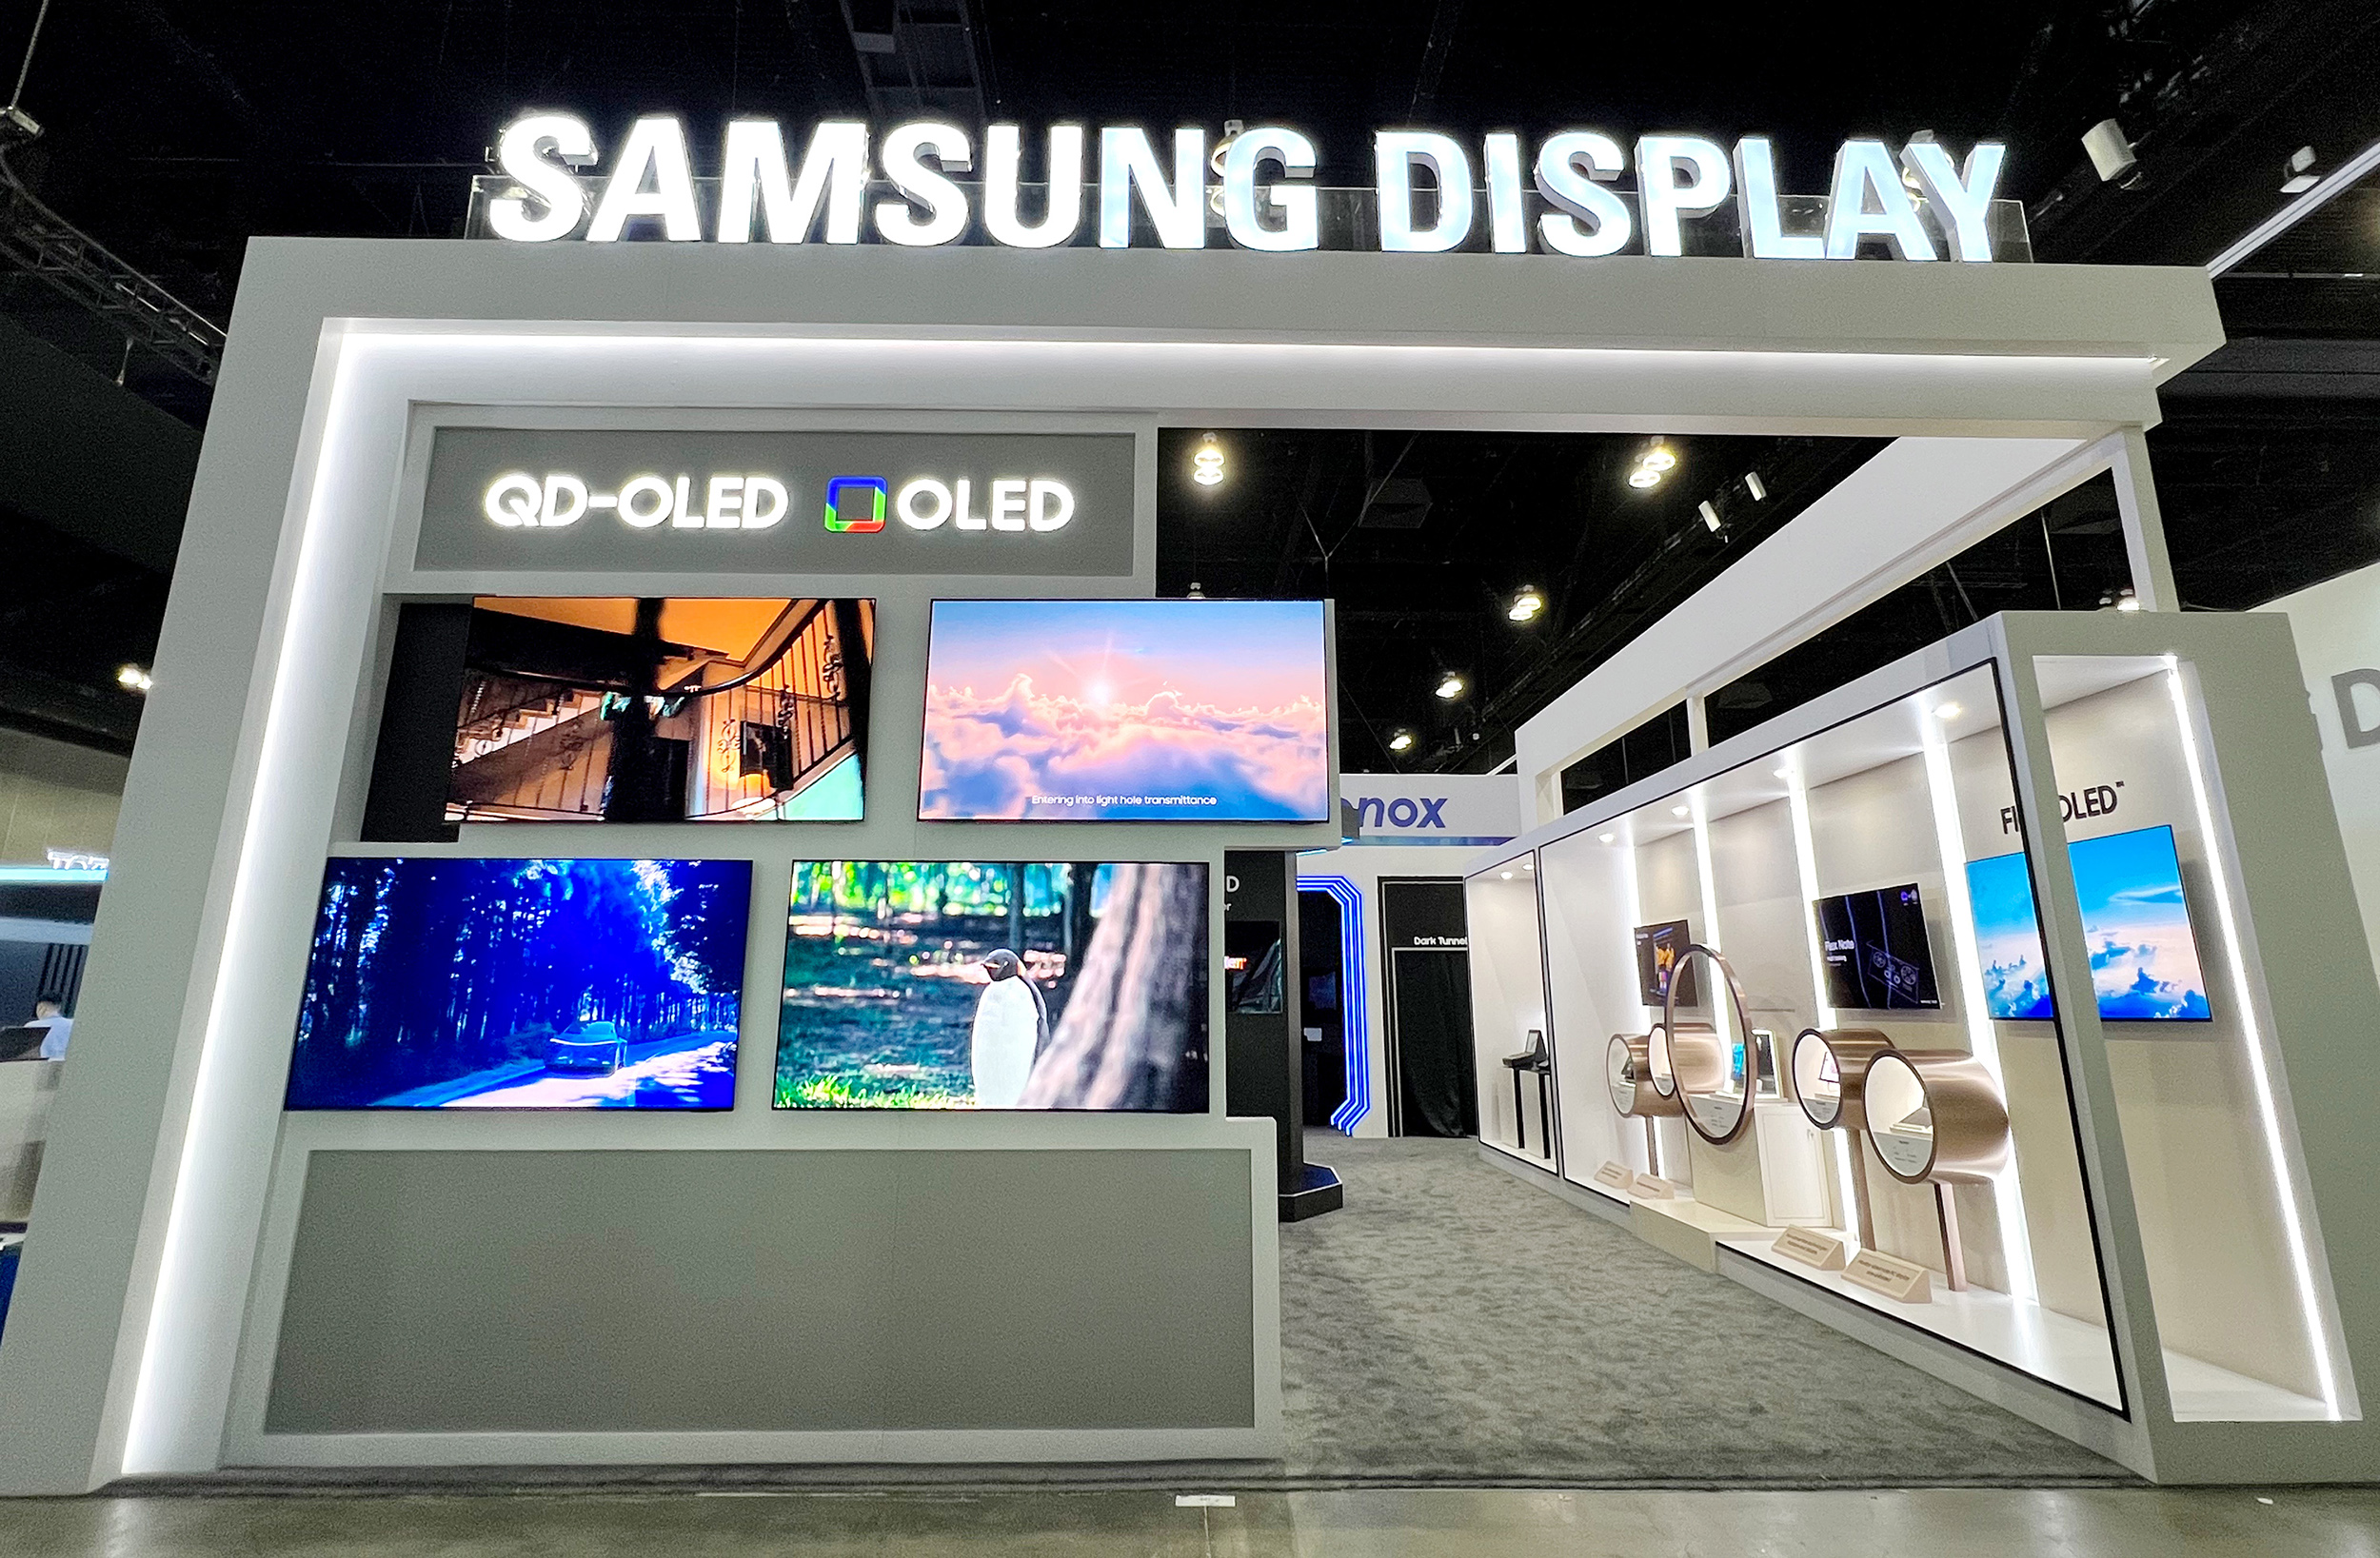 Nowy wyświetlacz OLED firmy Samsung może mierzyć tętno, ciśnienie krwi i odczytywać odciski palców w dowolnym miejscu.